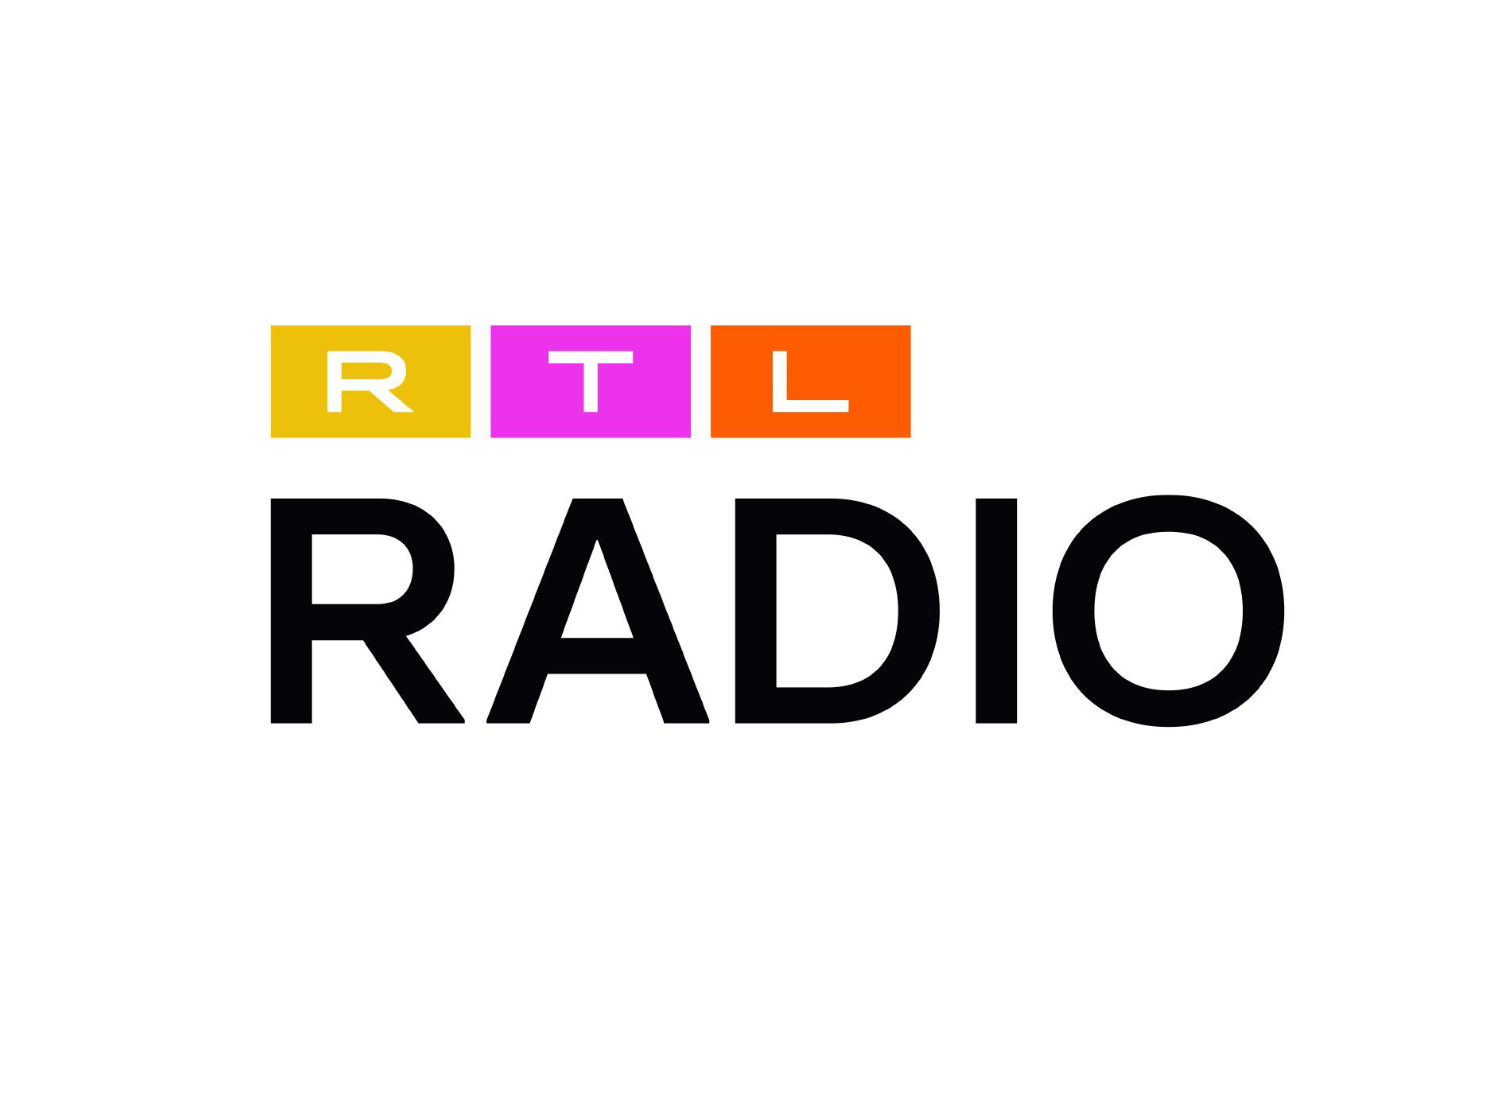 RTL Radiosender Logos, Bildquelle: RTL, Bildmontage: dt